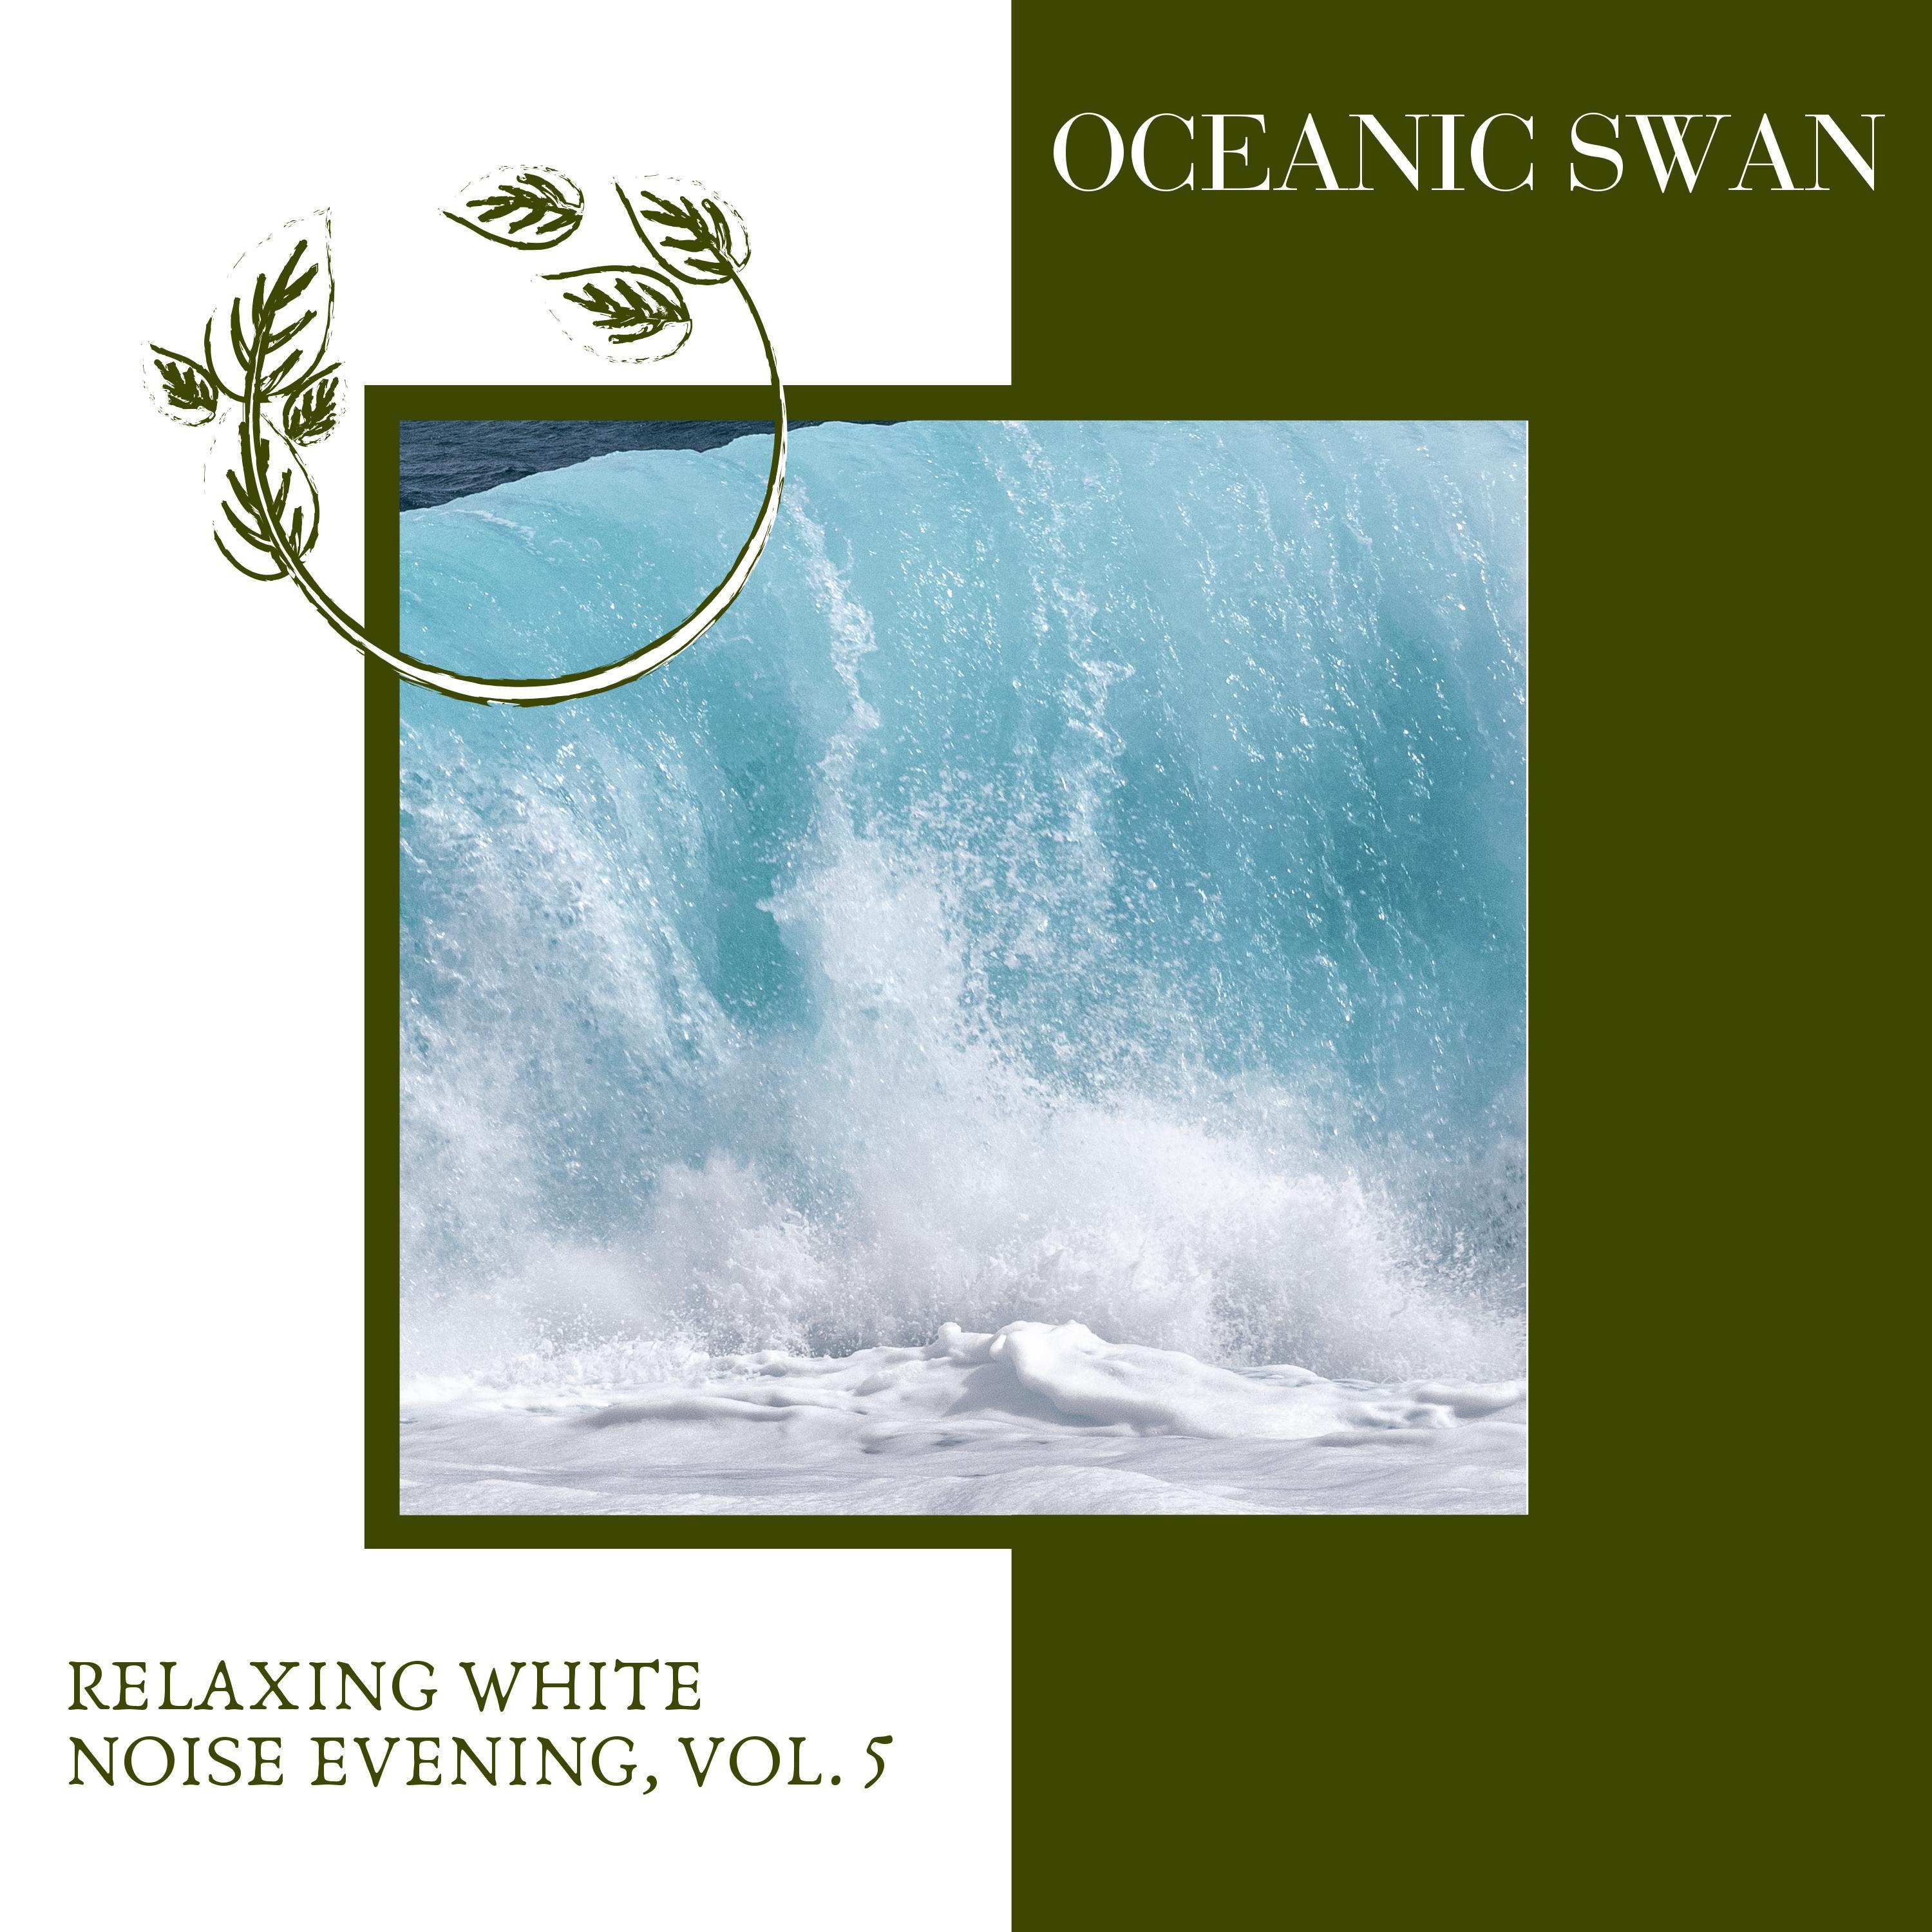 Round Waves Ocean Music - Nearby Birds Sound